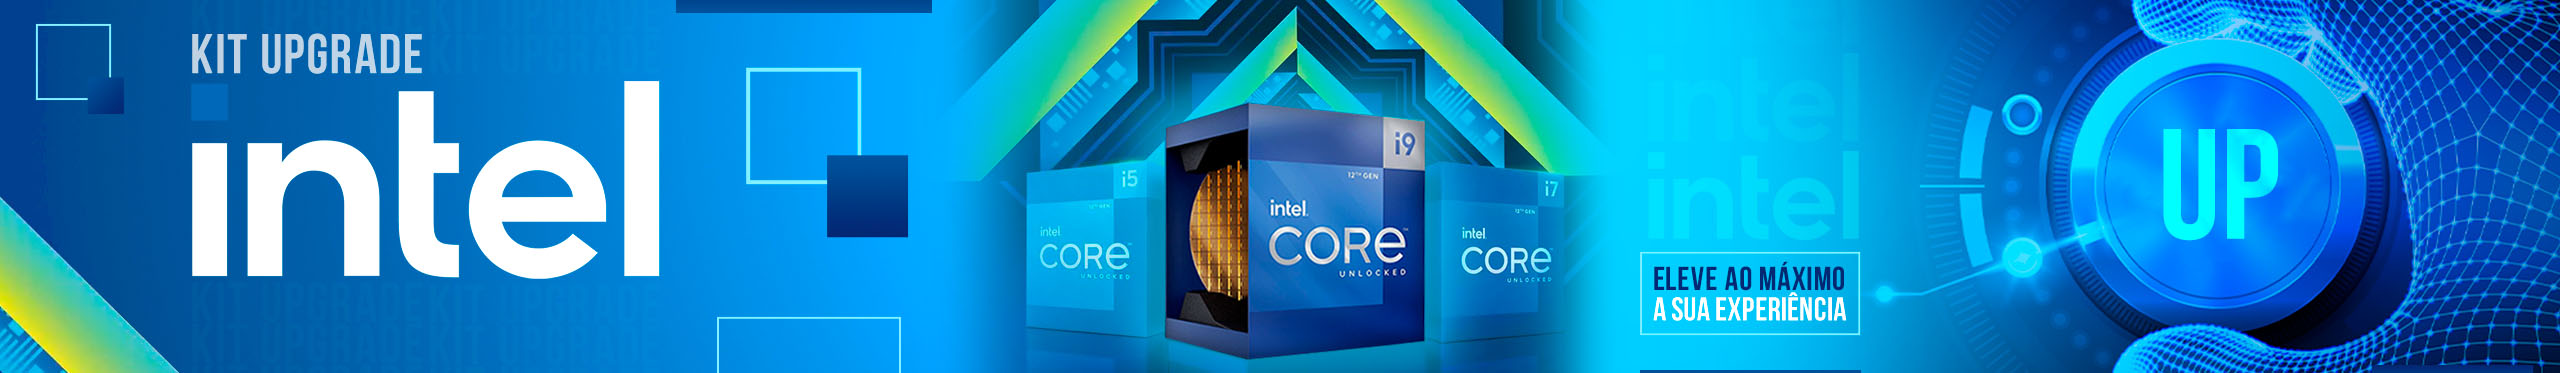 Turbine sua experiência com um Kit Upgrade Intel. Seu PC vai agradecer pelo UP.